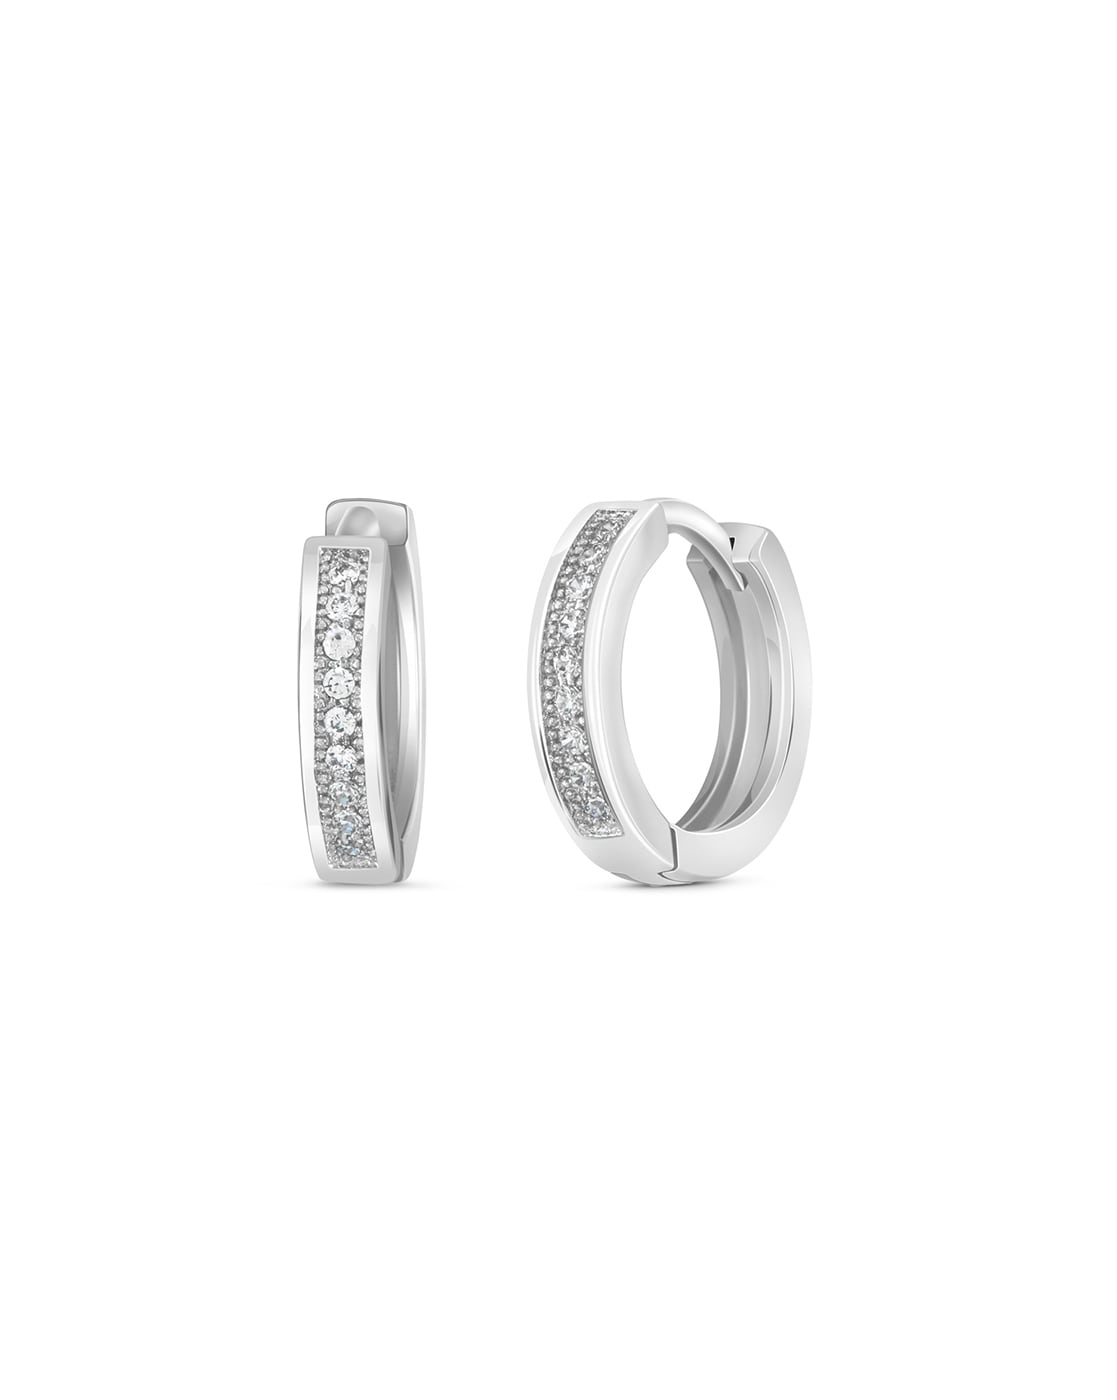 Knot design silver earring ring  Silver bali for women  Earrings  Jewellery  FOLKWAYS